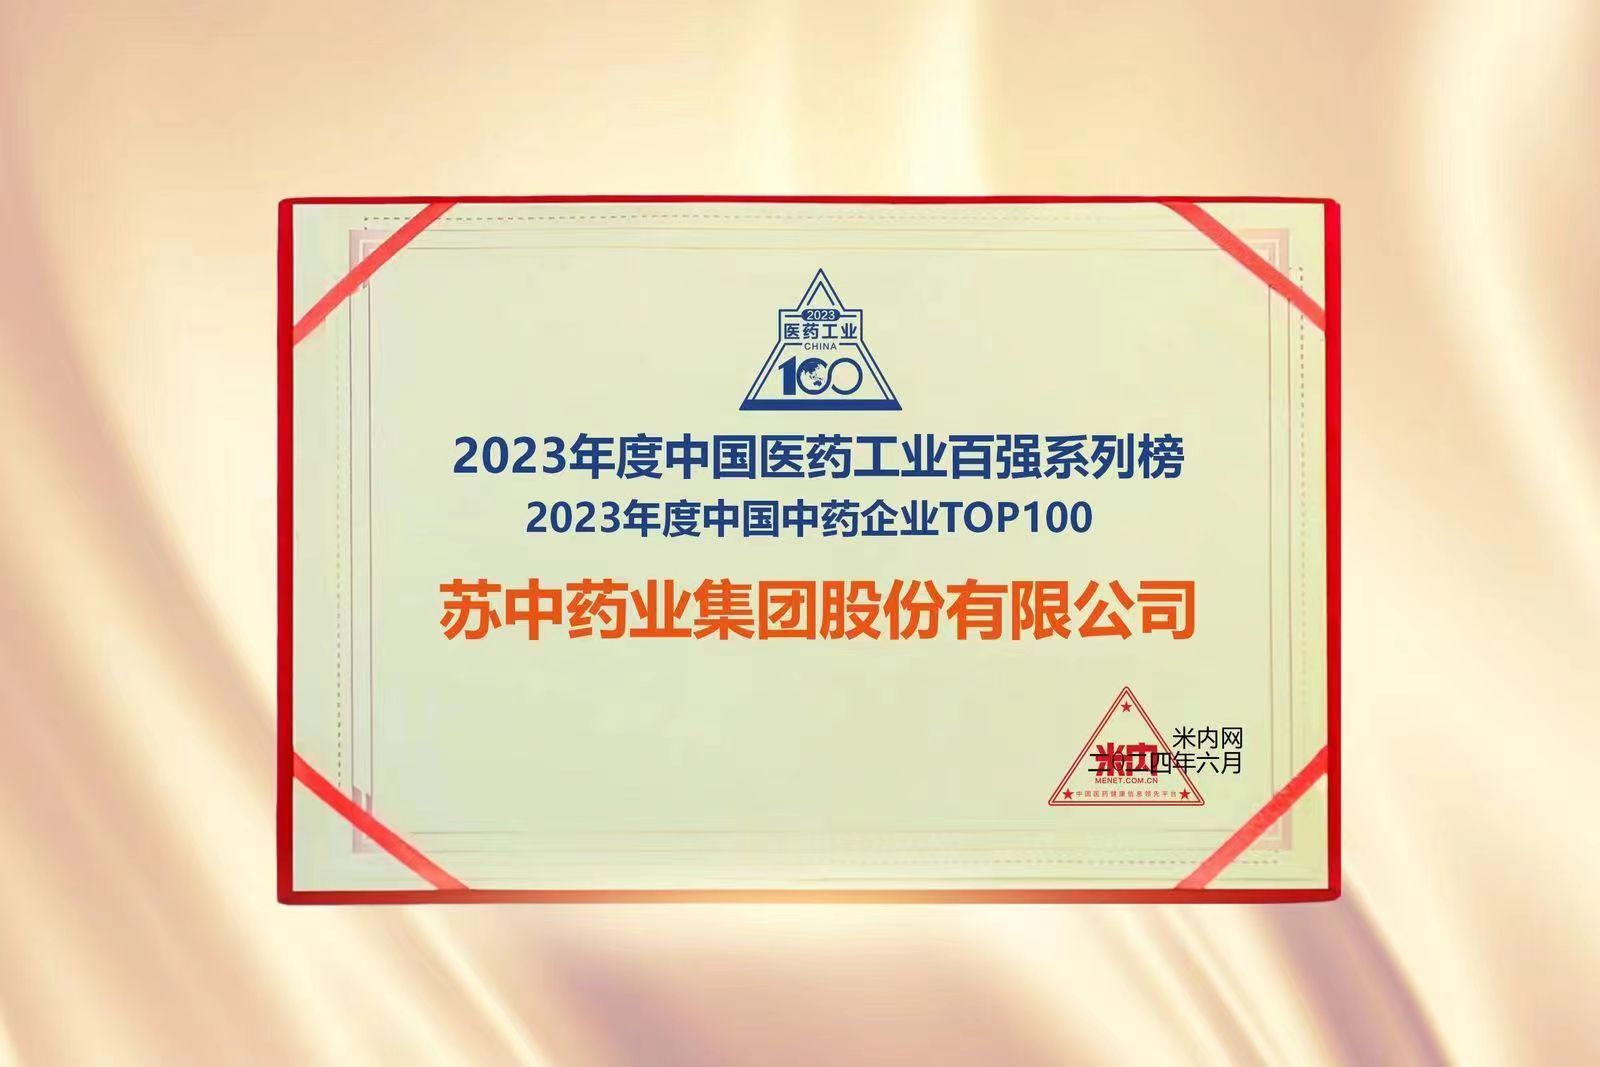 百强韧劲，进击新局—— 热烈祝贺苏中药业荣获“2023年度中国中药企业TOP100”企业称号